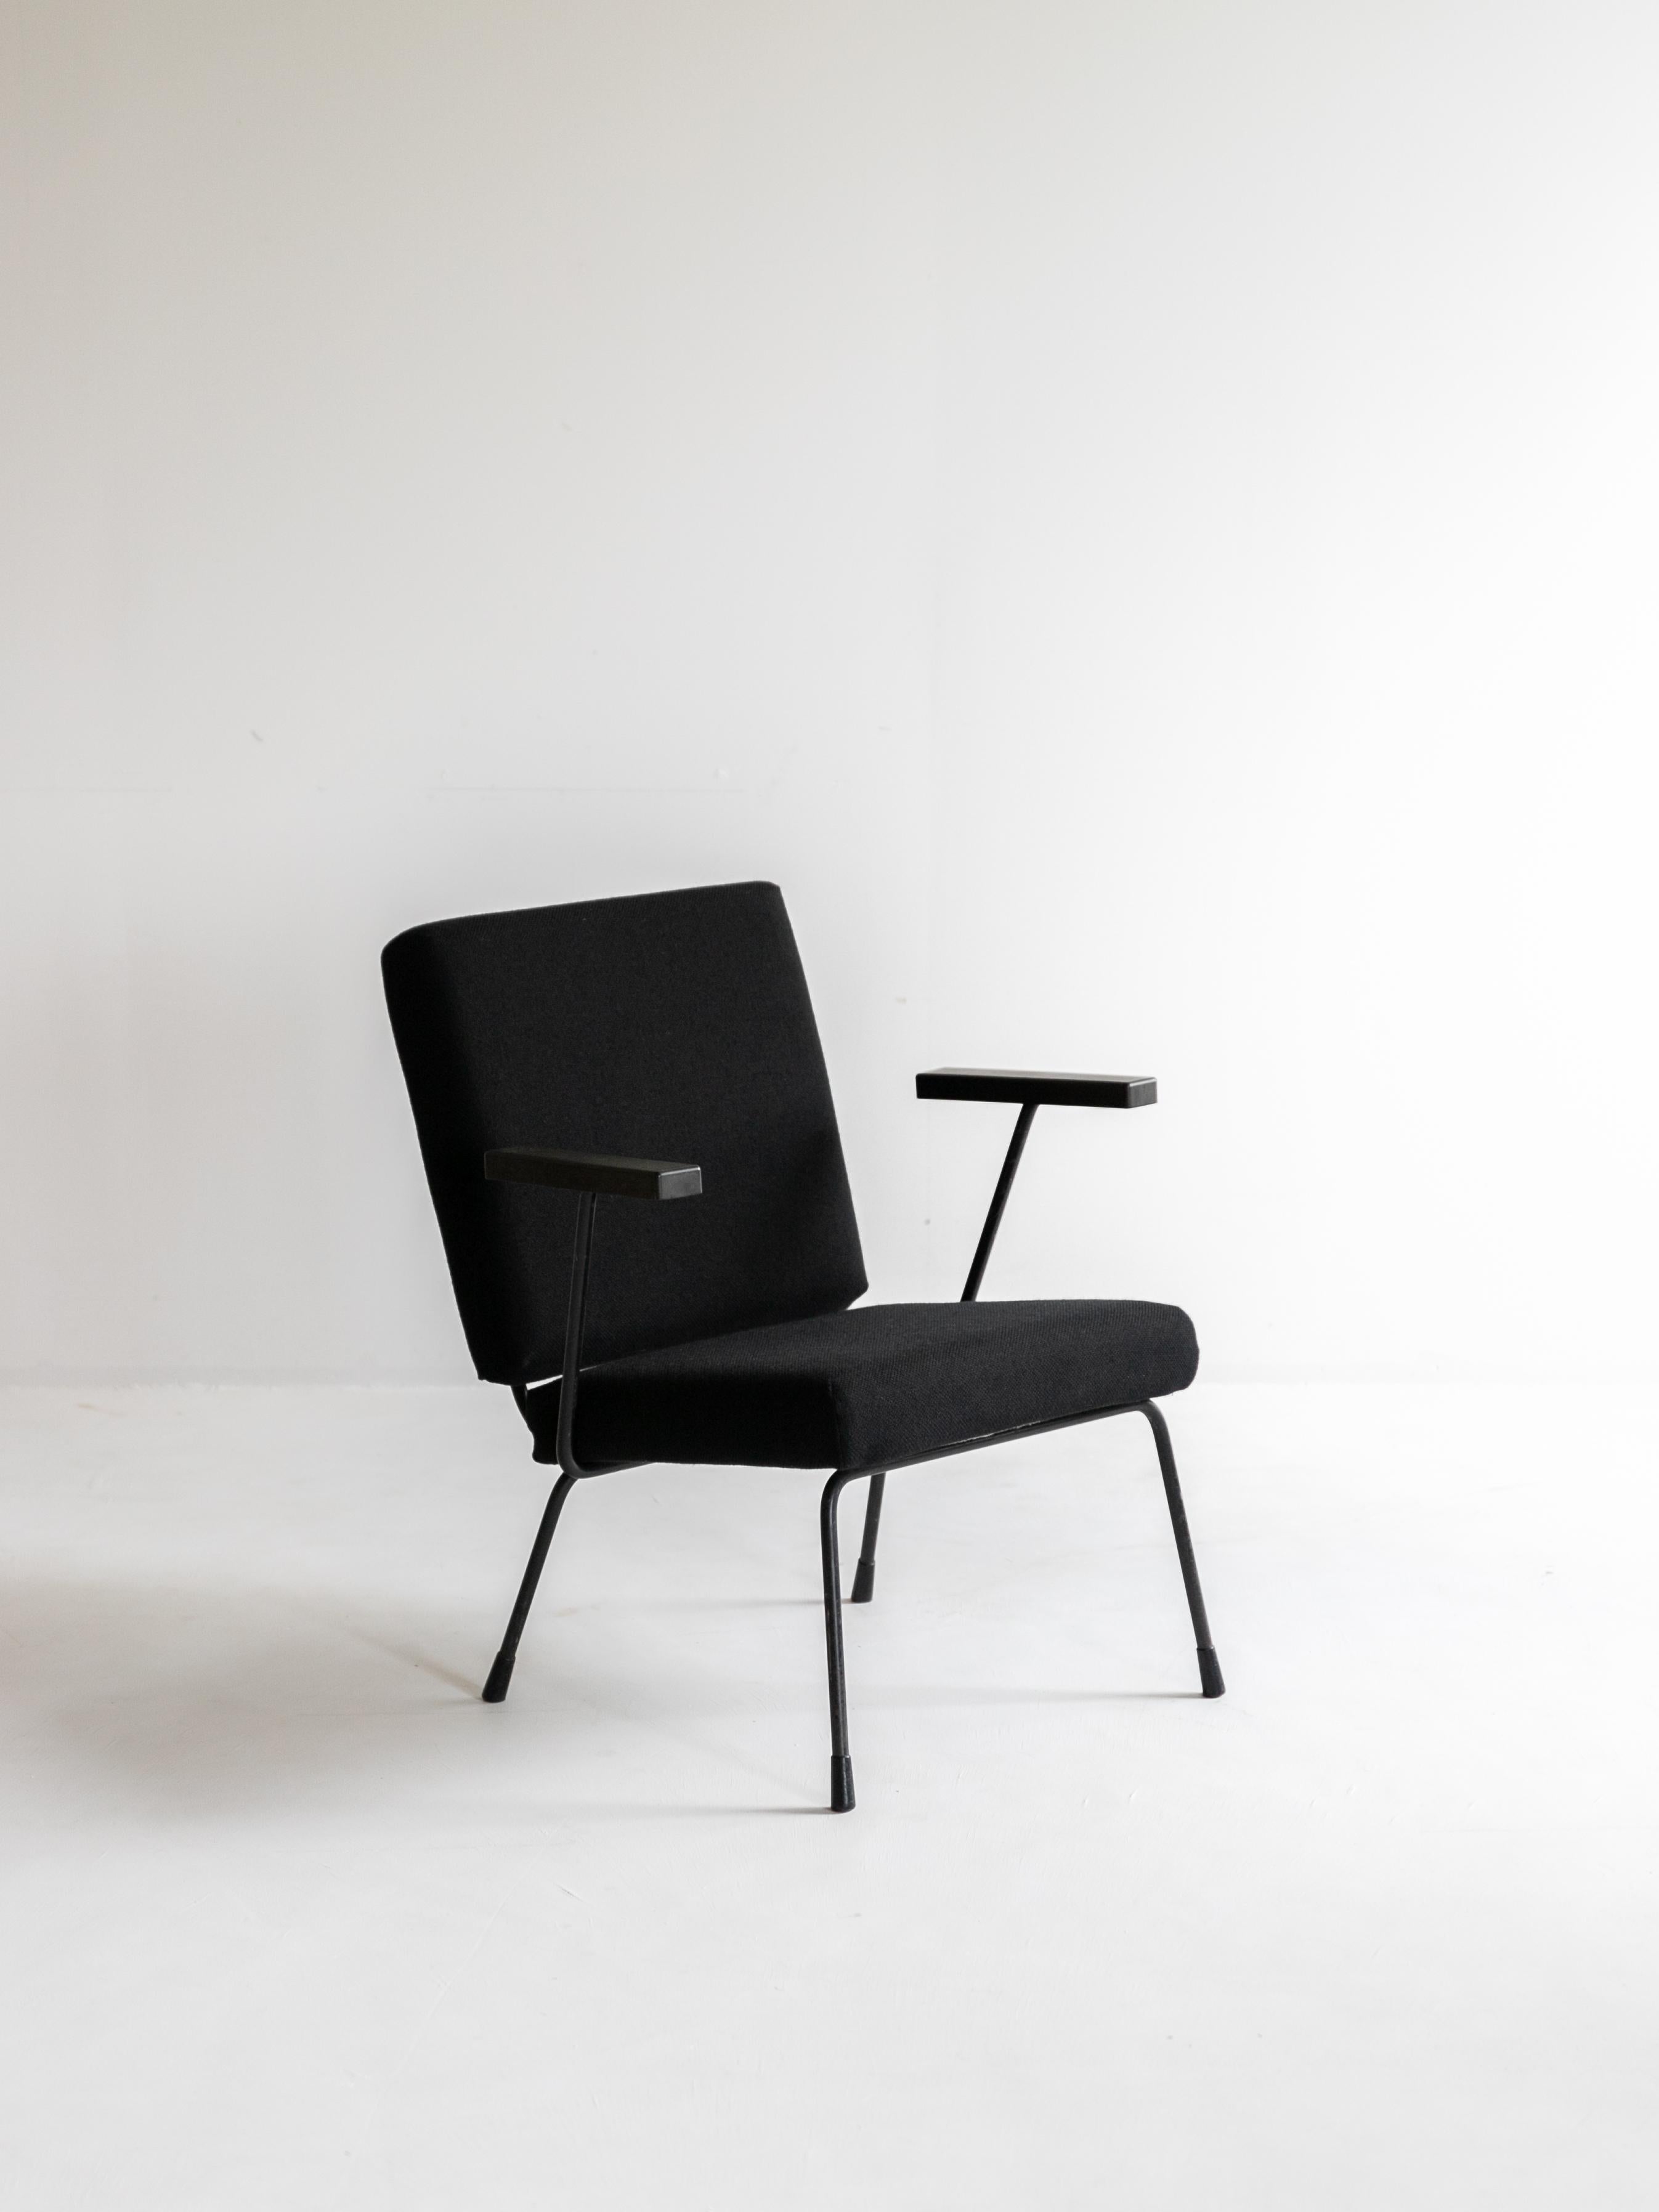 Wim Rietveld Modell 415/1401

Wim Rietveld wurde 1924 geboren. Sein Vater war Gerrit Rietveld, ein führender niederländischer Designer, der den berühmten Red and Blue Chair entwarf. Nach seinem Studium des Industriedesigns an der Königlichen